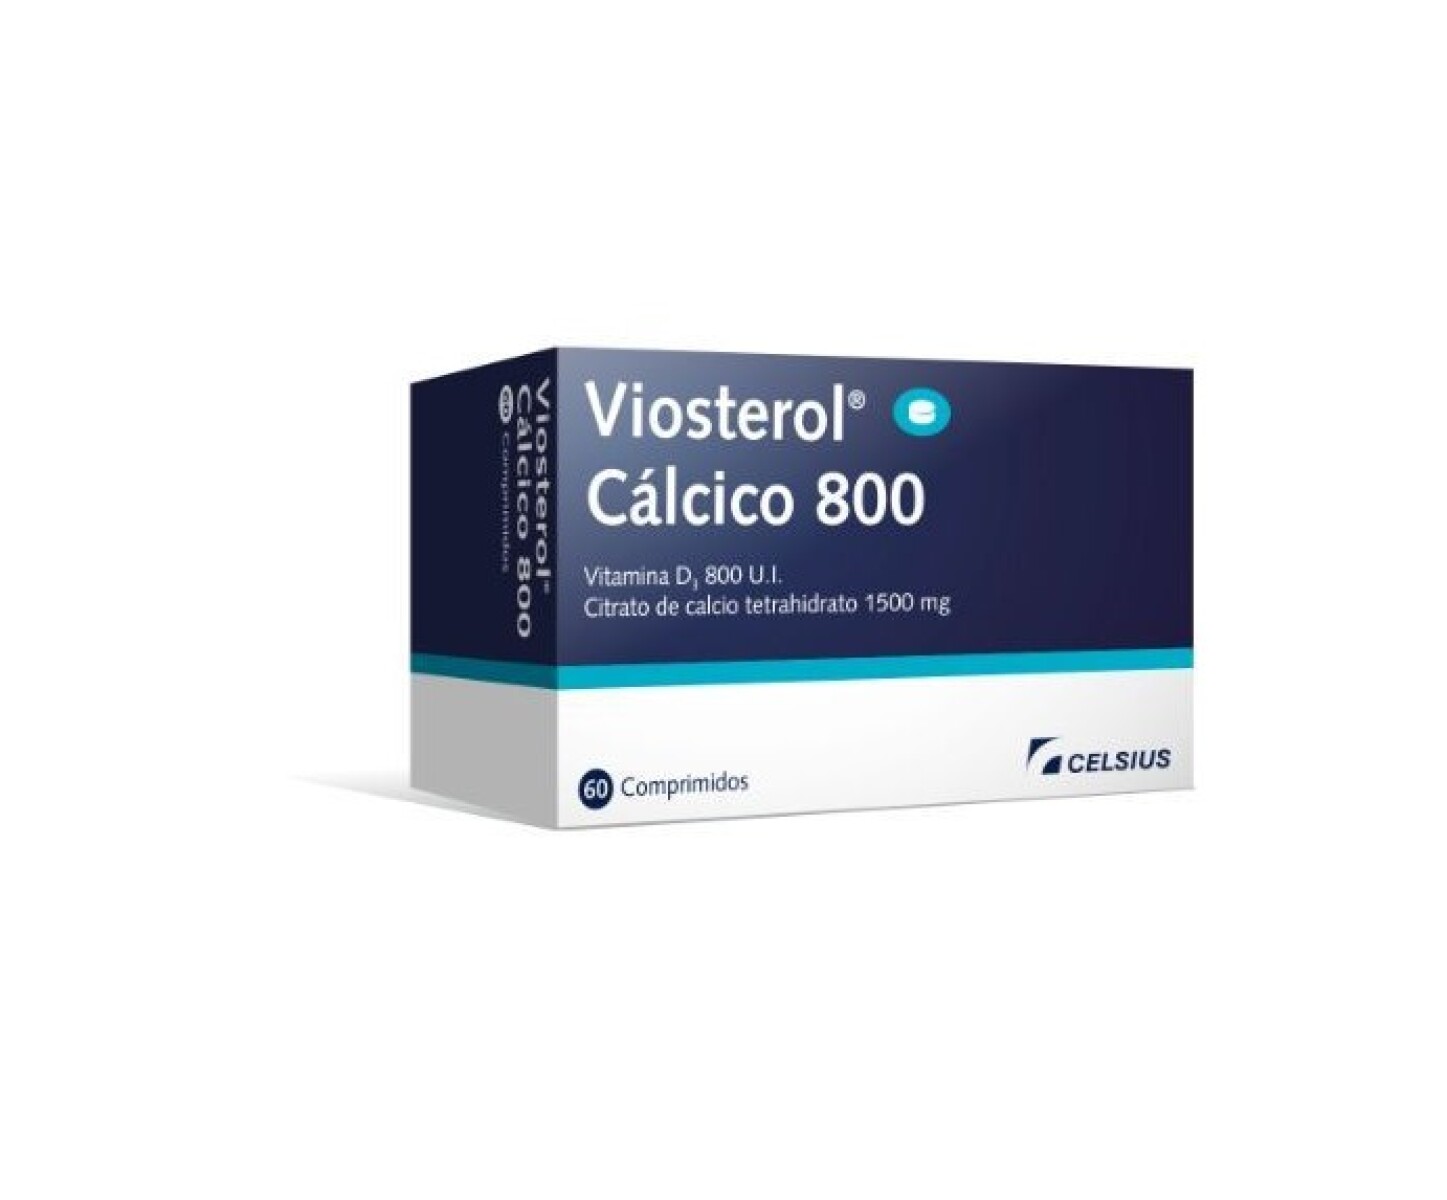 Viosterol Calcico 800 x 60 COM 